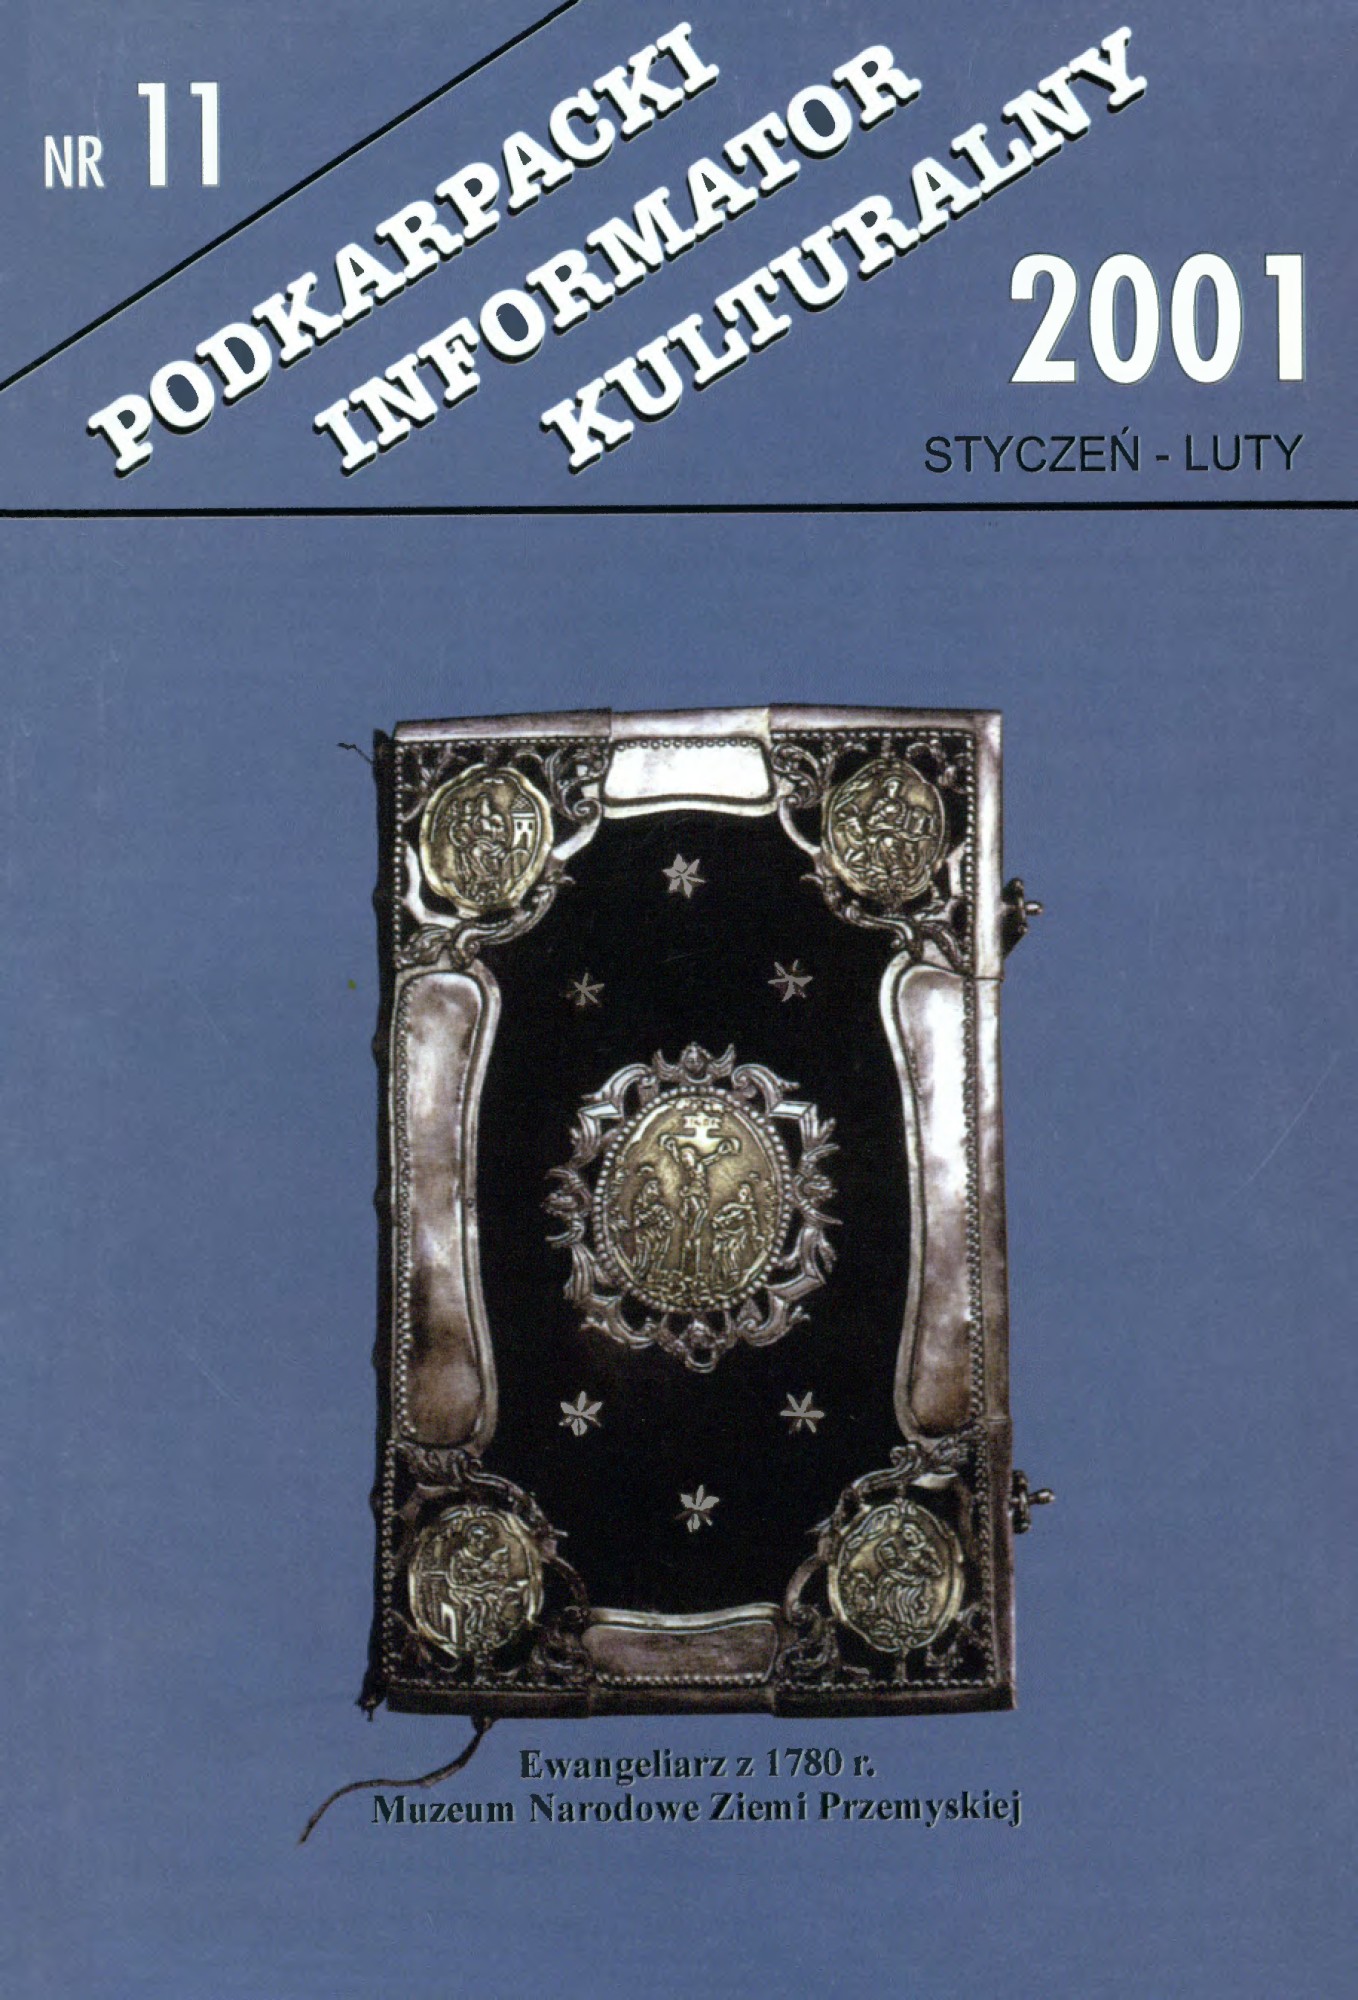 zdjęcie okładki czasopisma - Podkarpacki Informator Kulturalny. 2001, nr 11 (styczeń-luty)